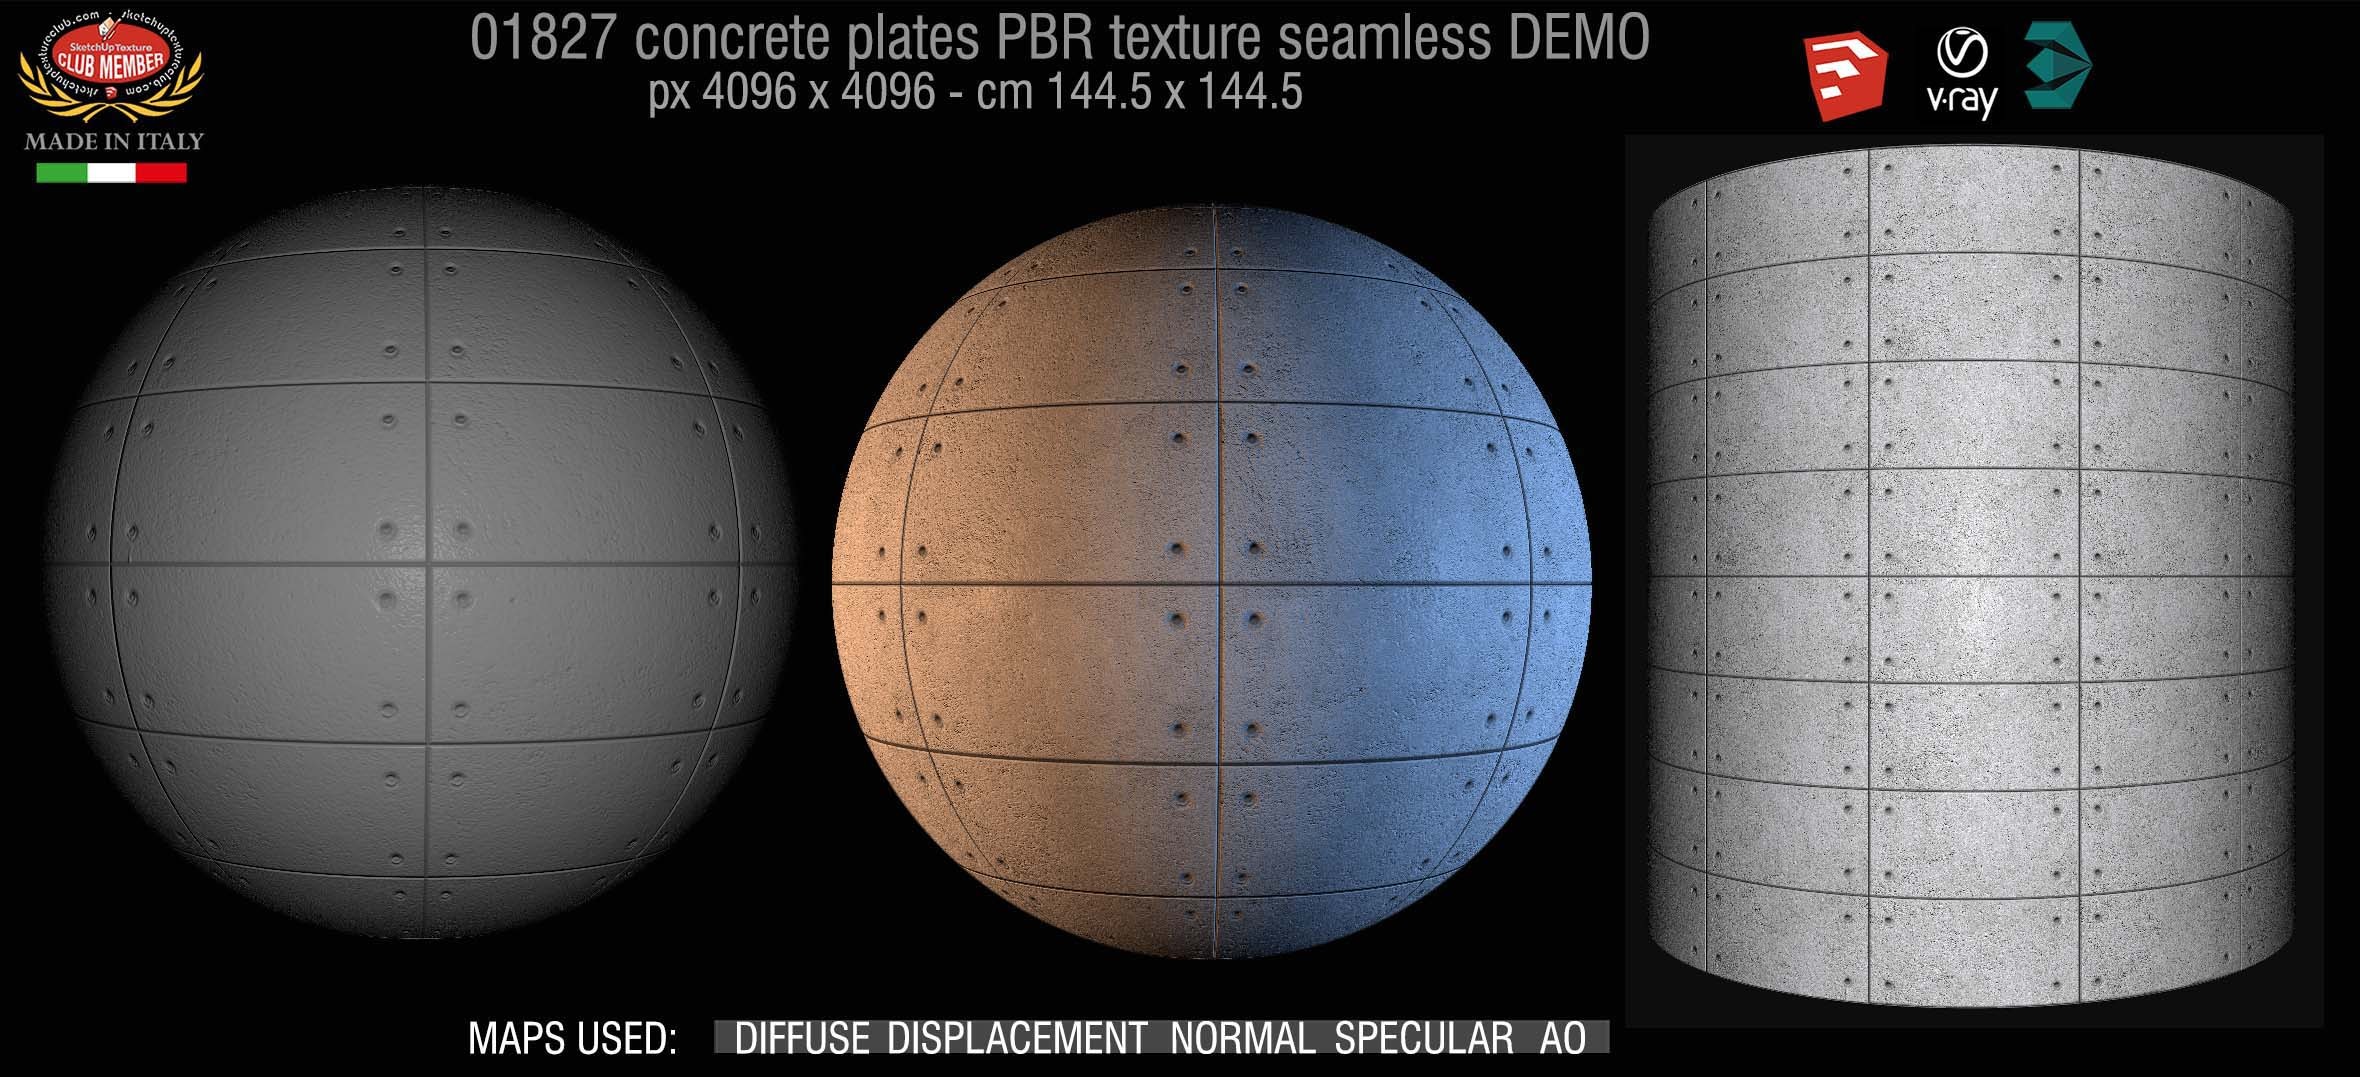 01827 Tadao Ando concrete plates PBR texture seamless DEMO